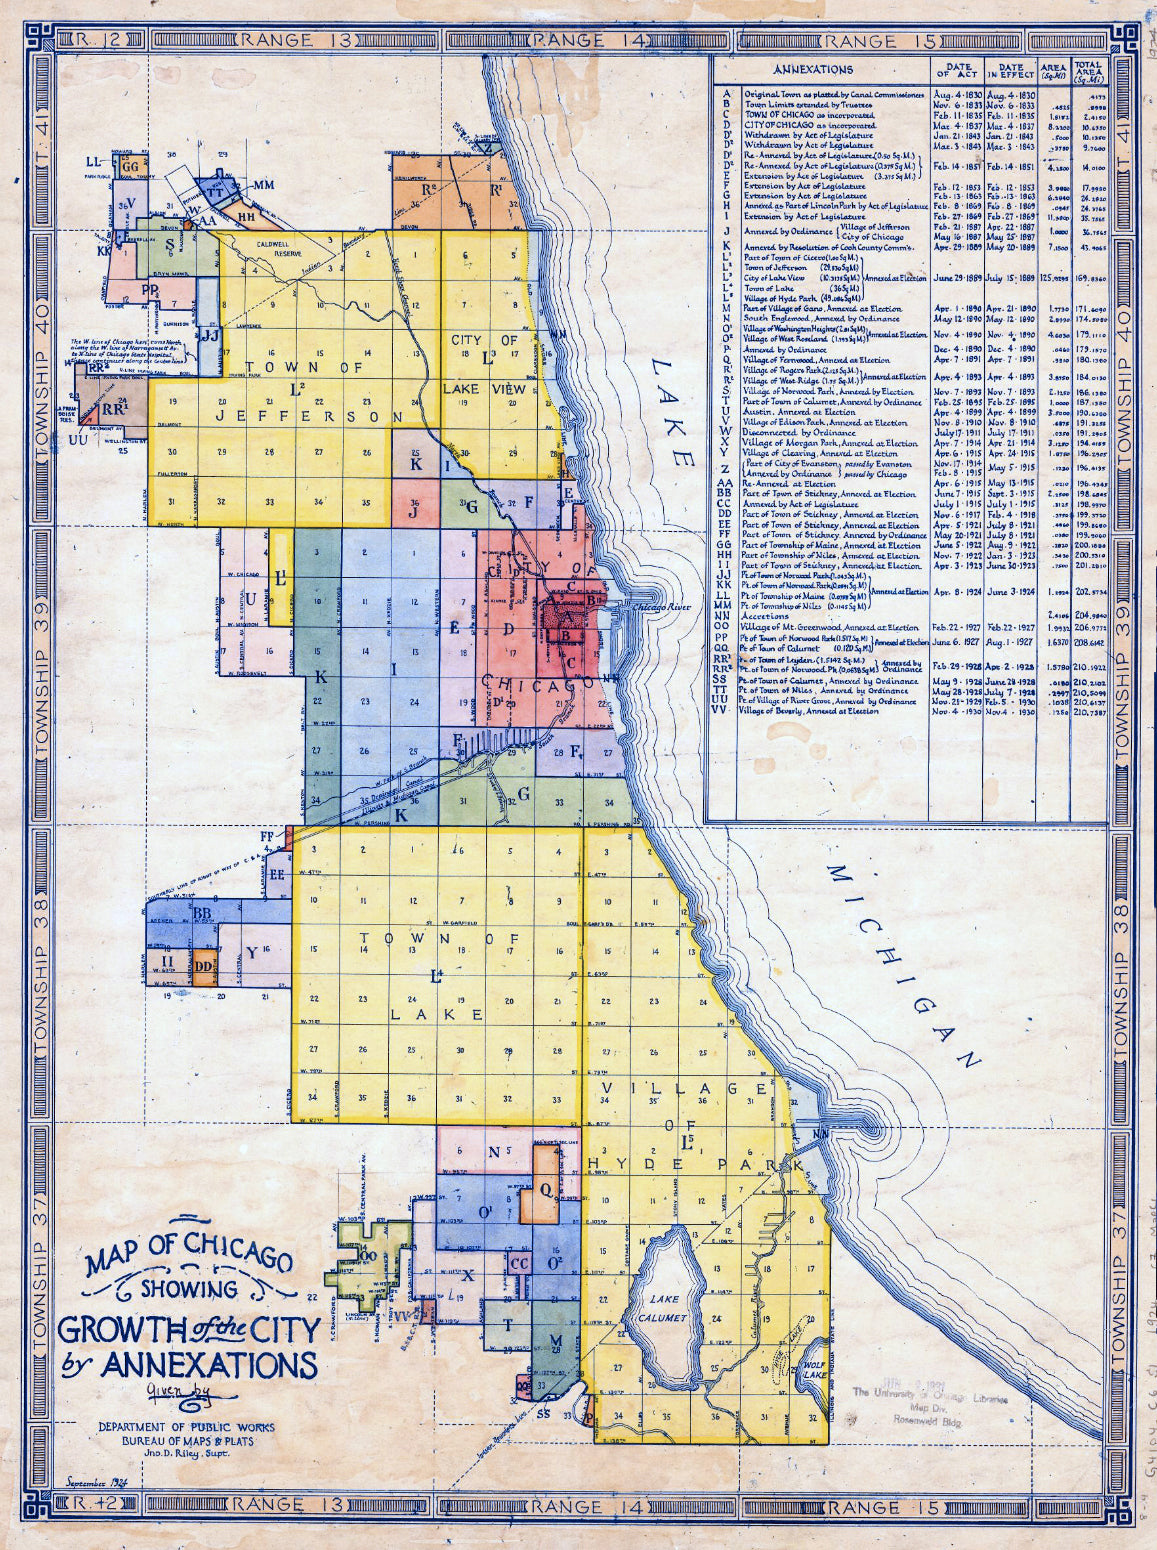 chicago annexation map